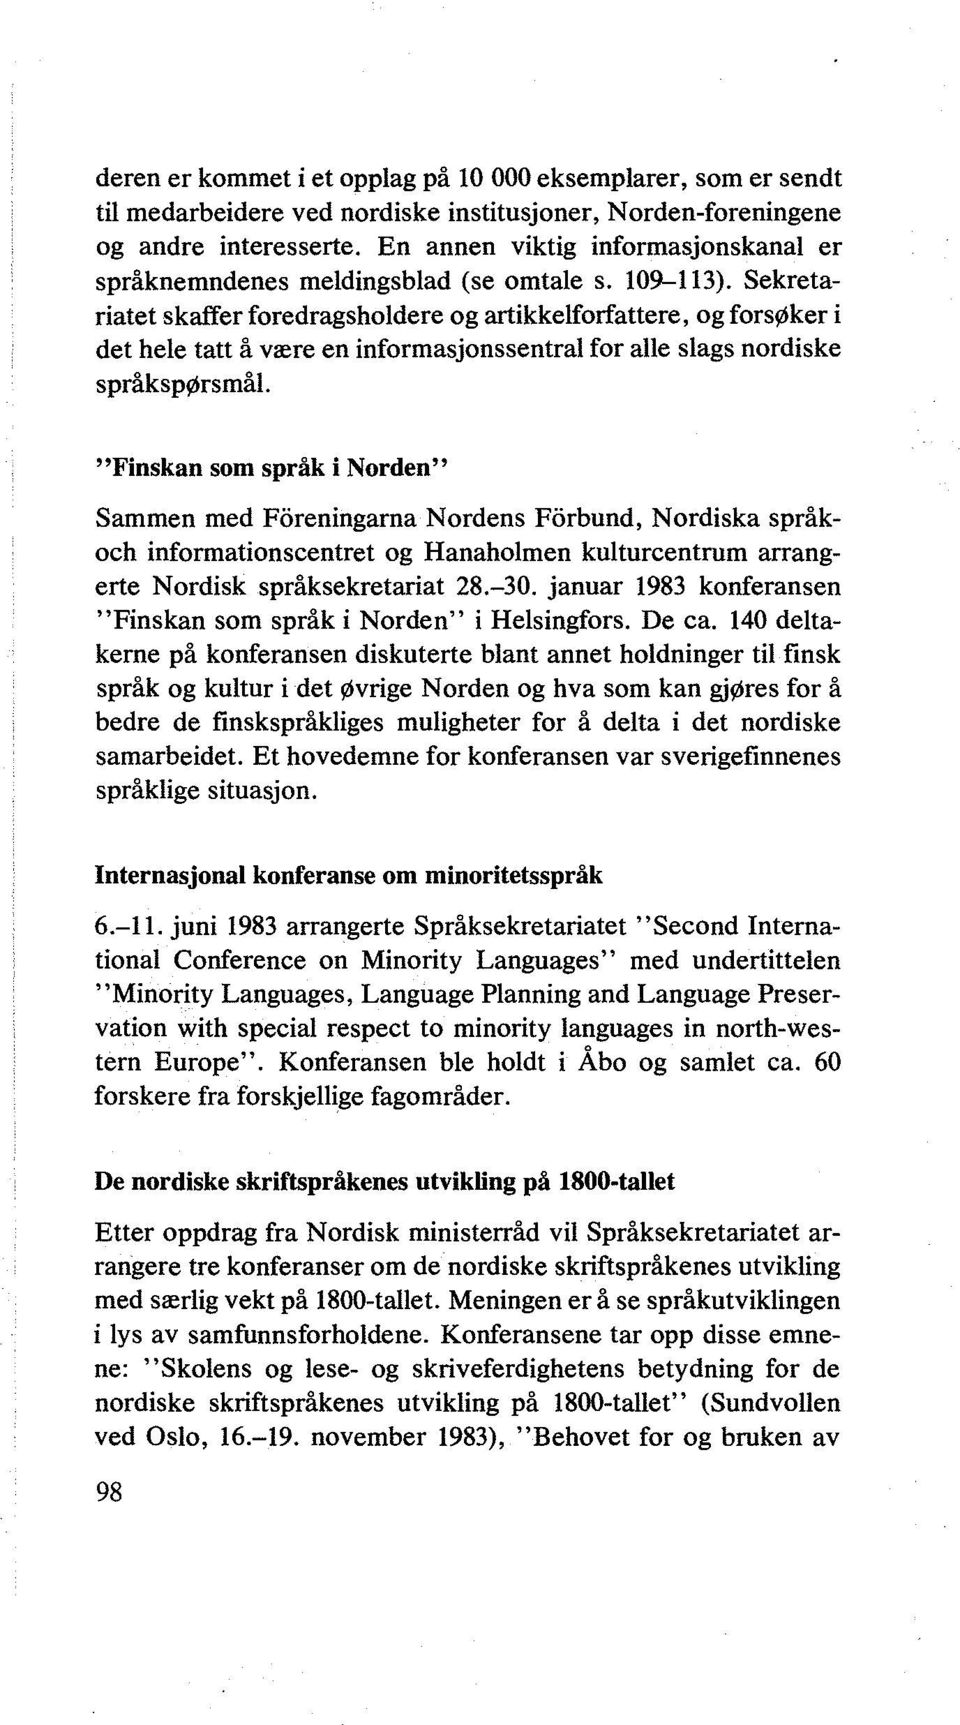 Sekretariatet skaffer foredragsholdere og artikkelforfattere, og forsøker i det hele tatt å være en informasjonssentral for alle slags nordiske språkspørsmål.